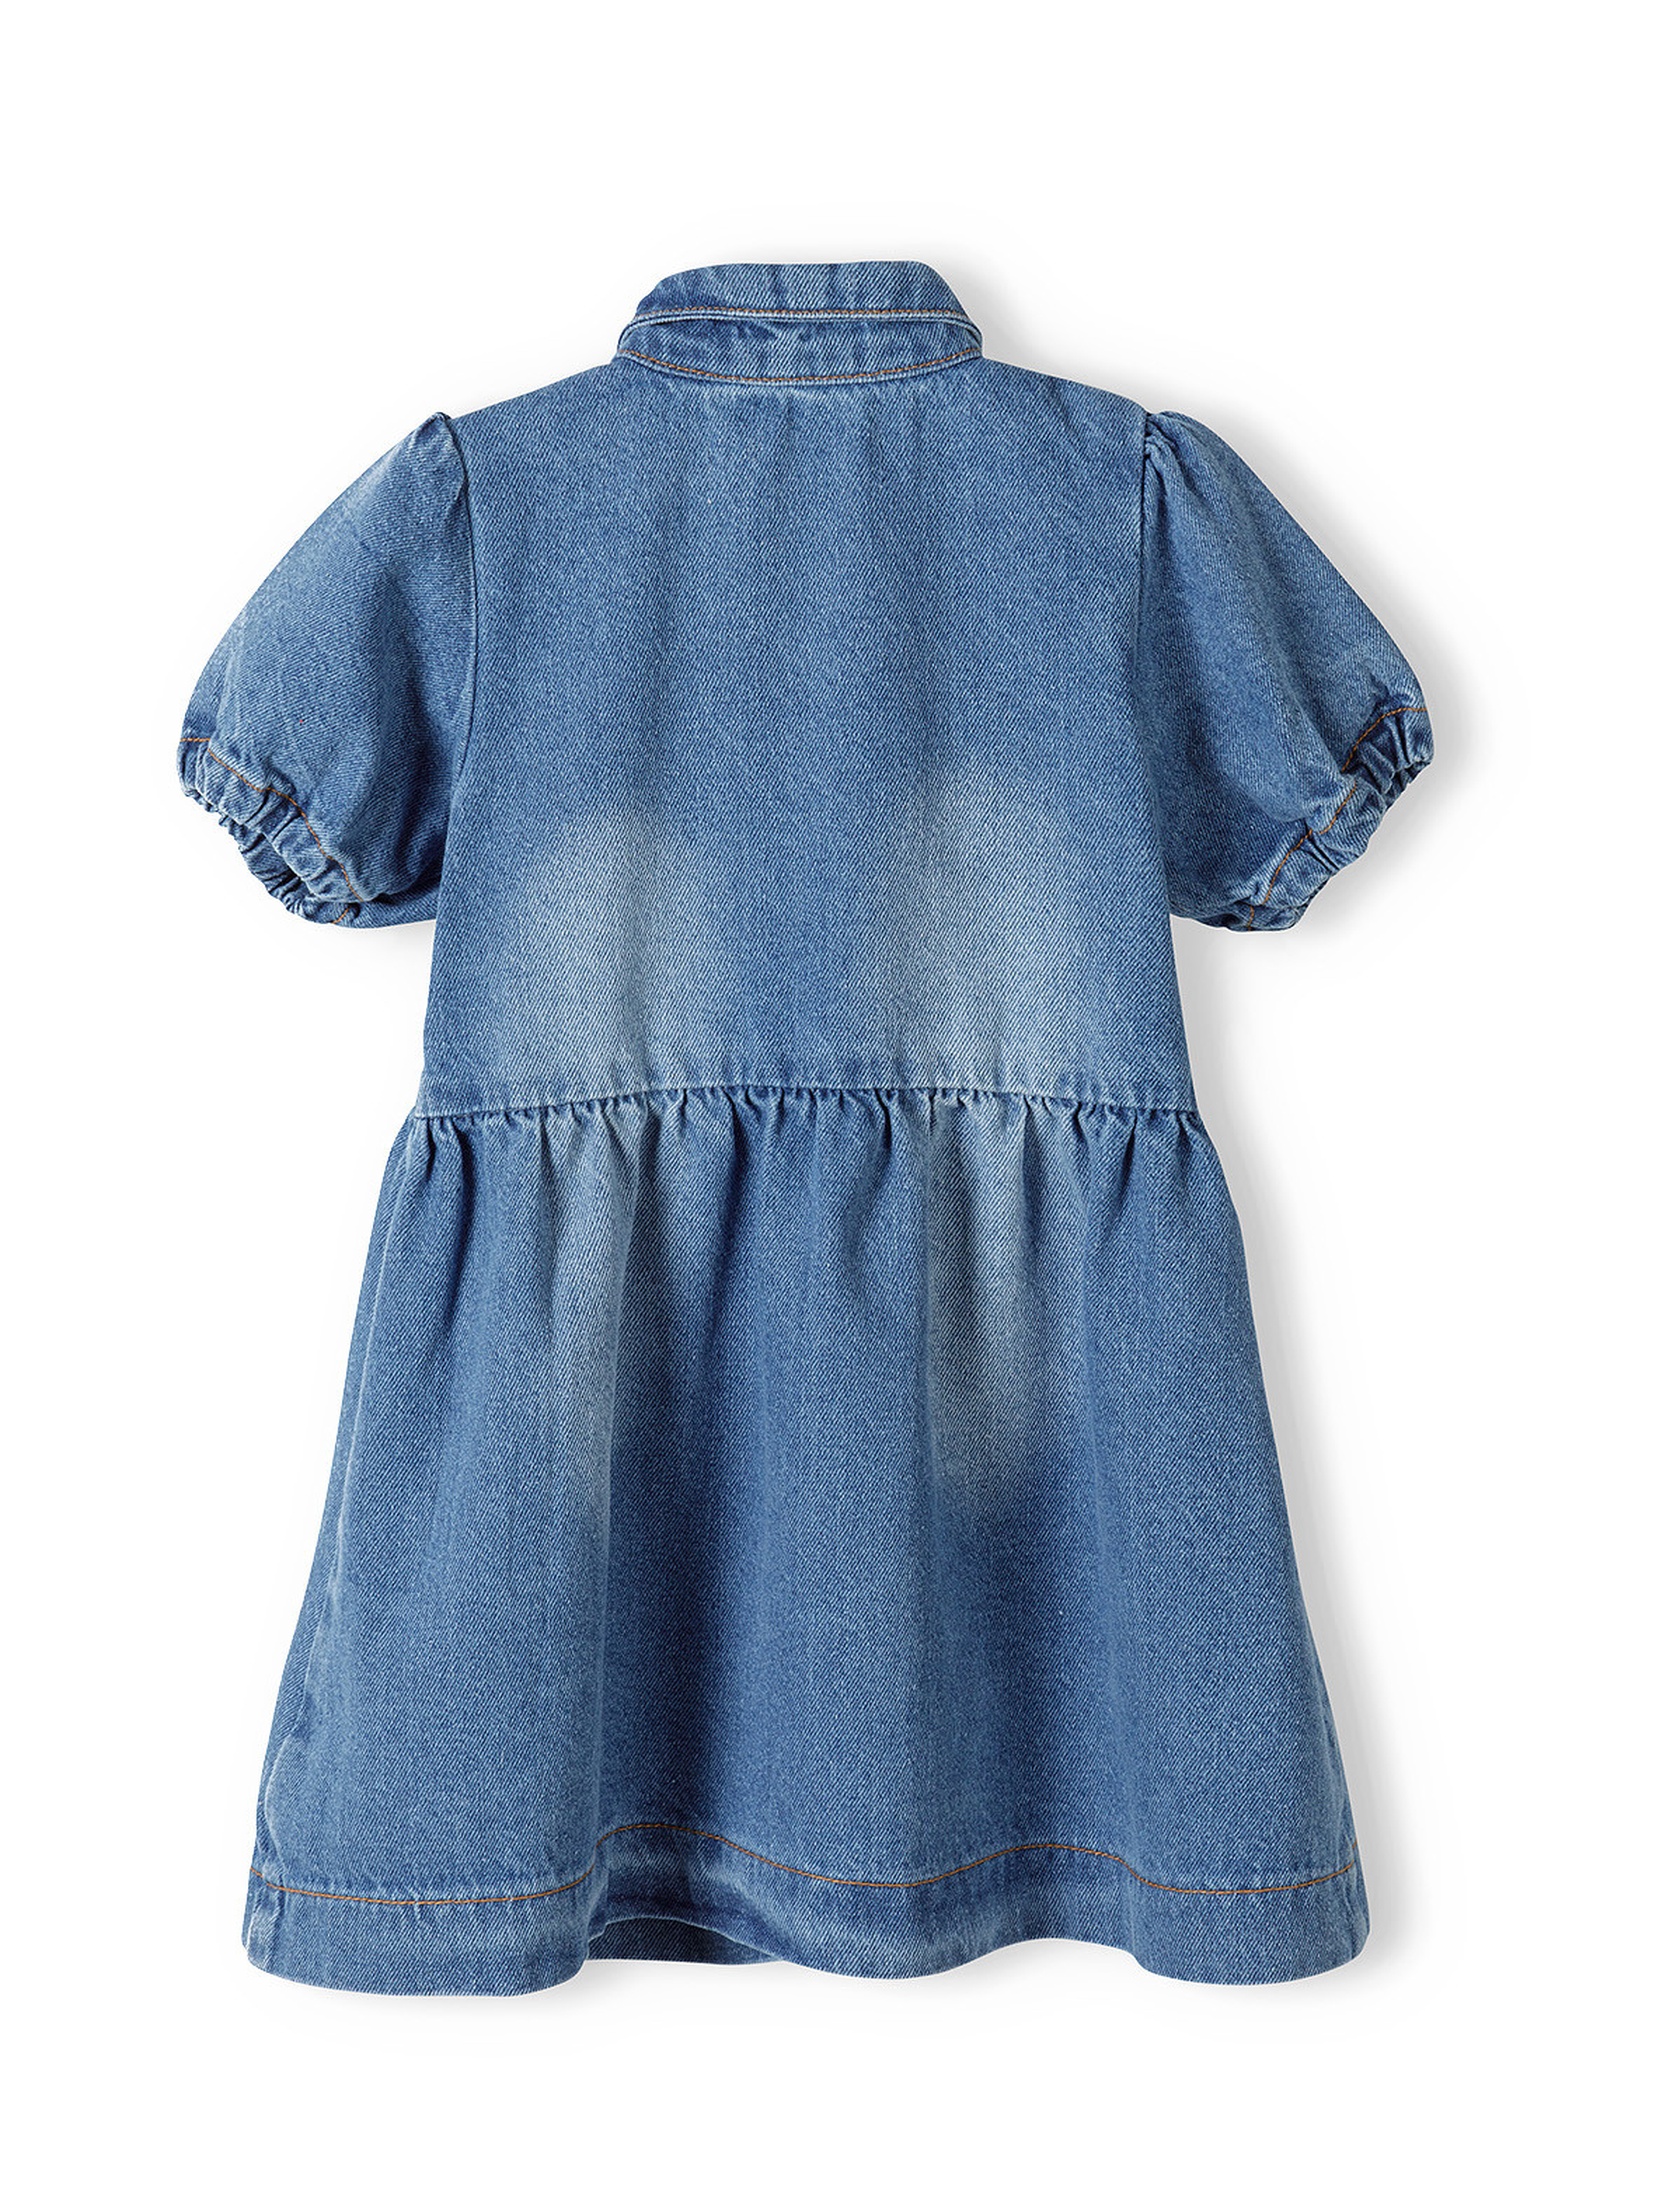 Jeansowa sukienka dla dziewczynki z krótkim rękawem